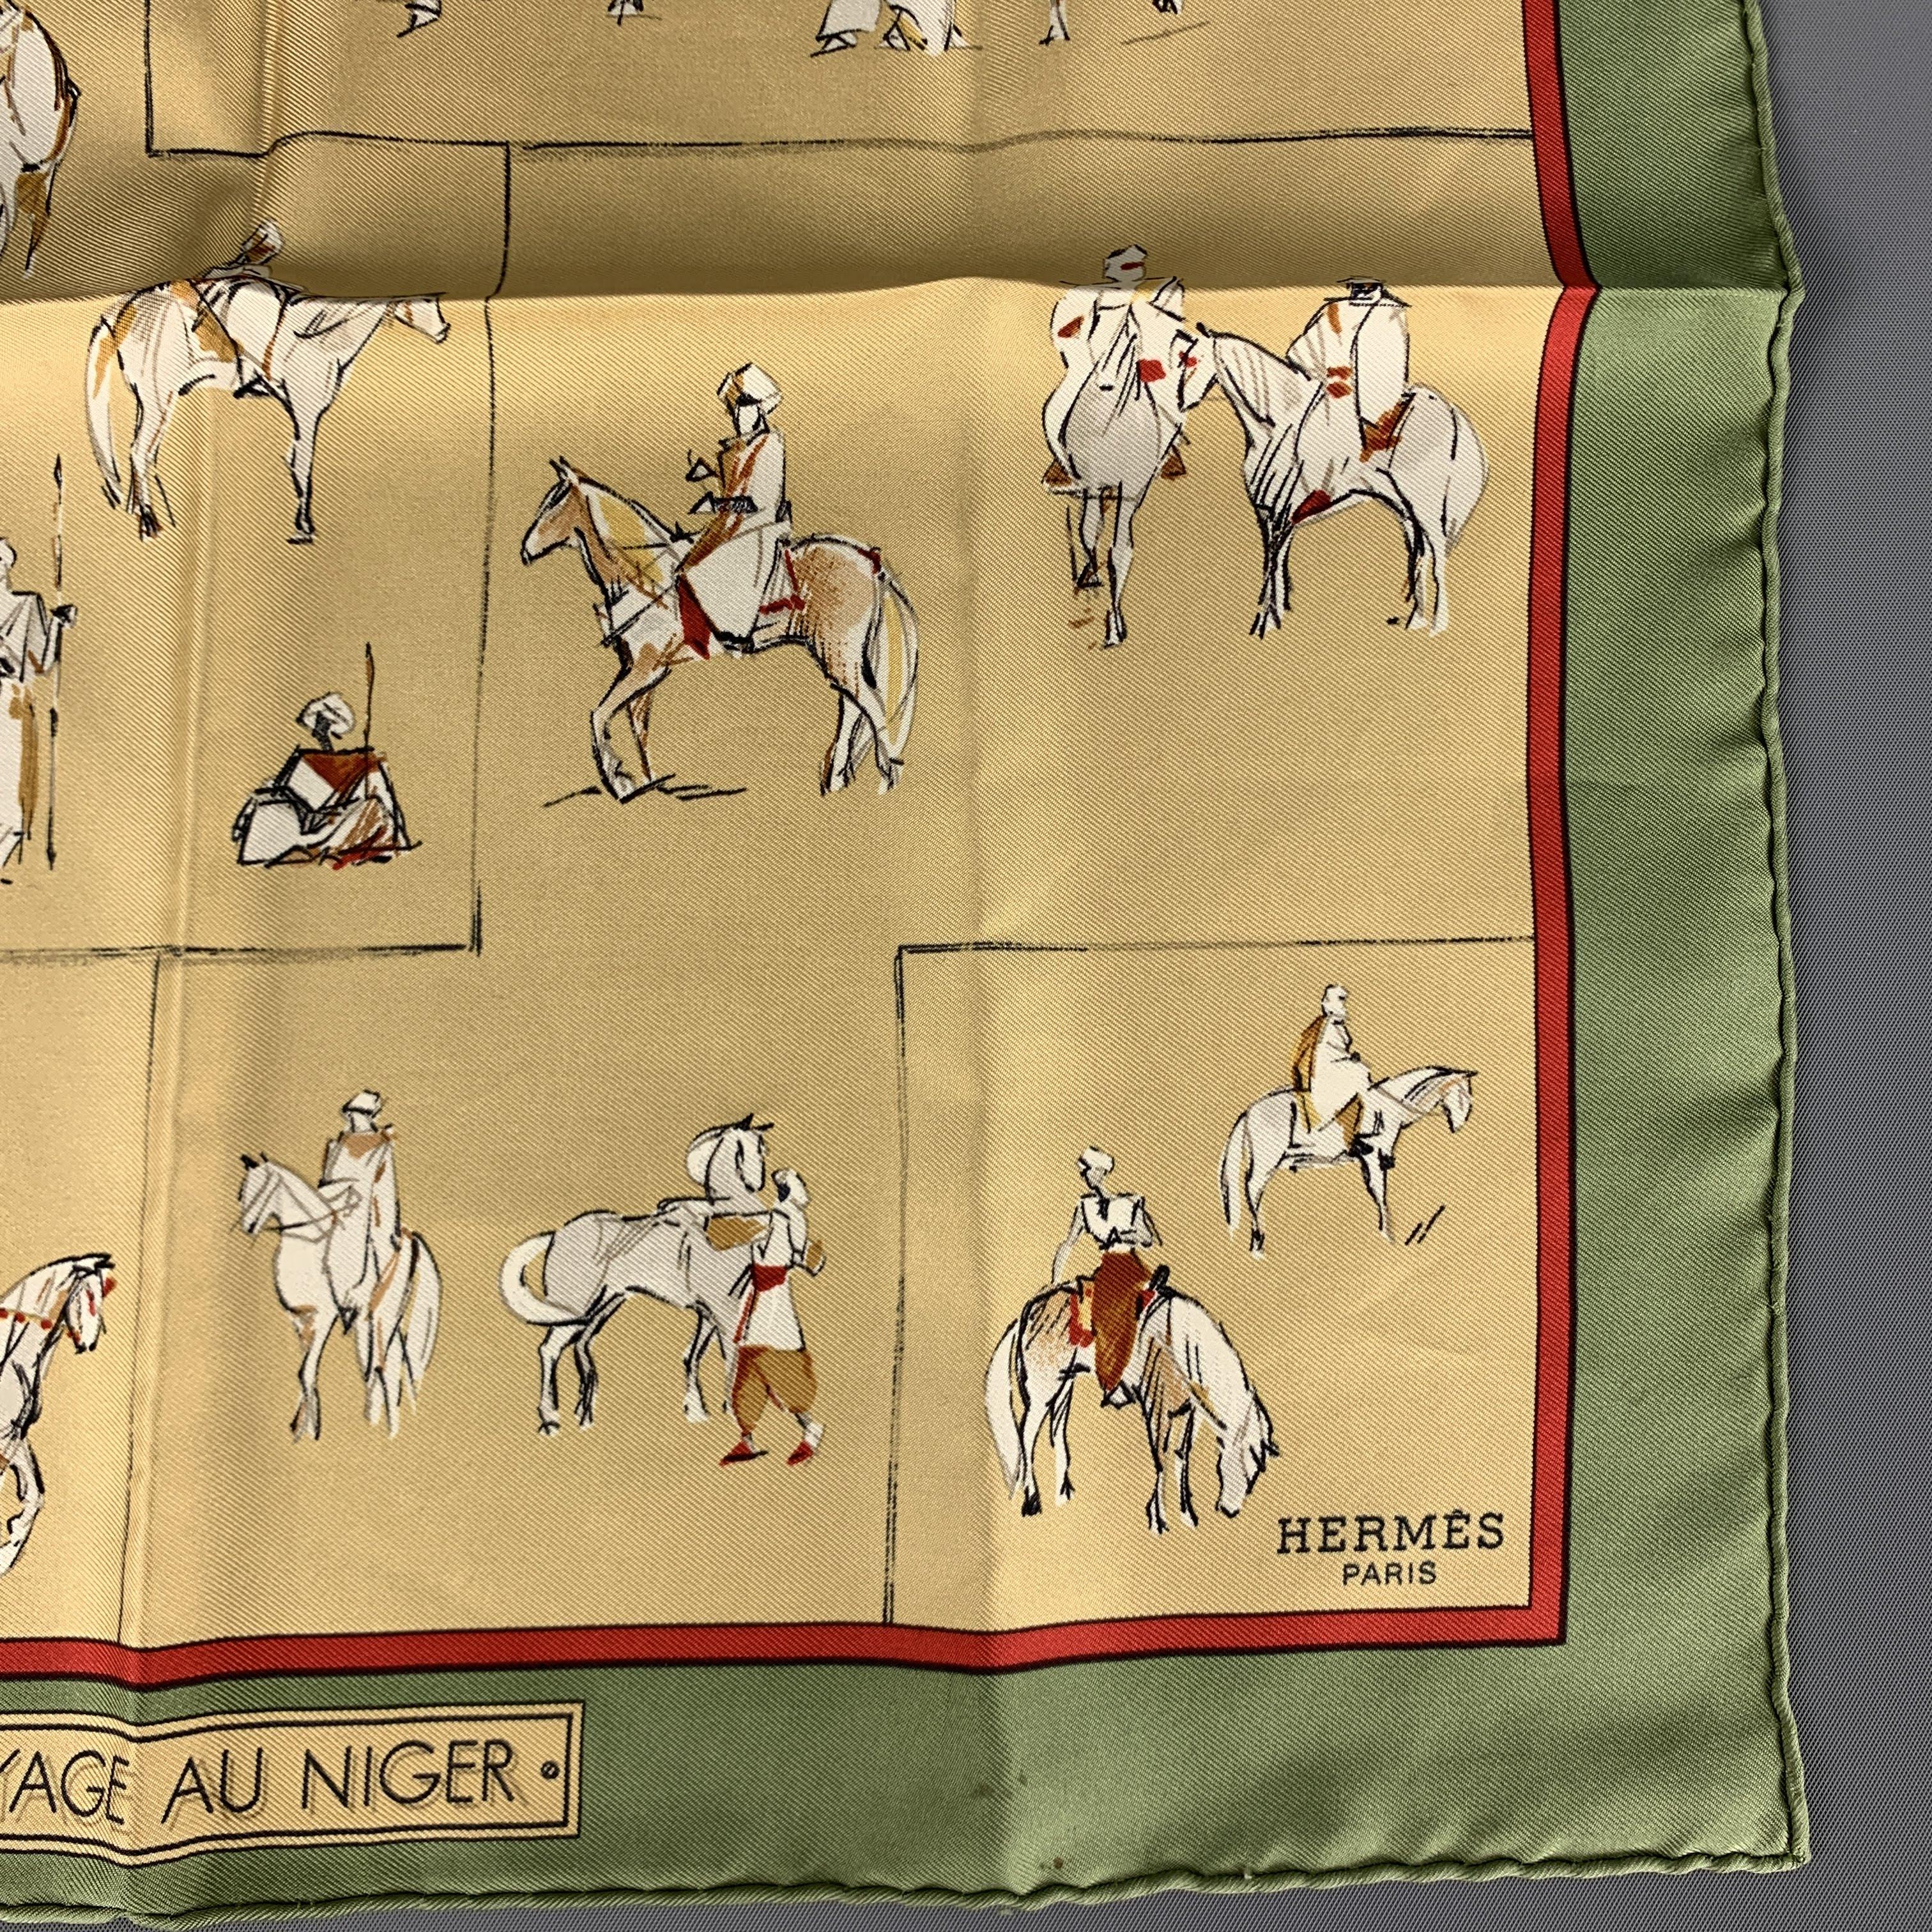 Men's HERMES Voyage au Niger Olive & Gold Silk Pocket Square